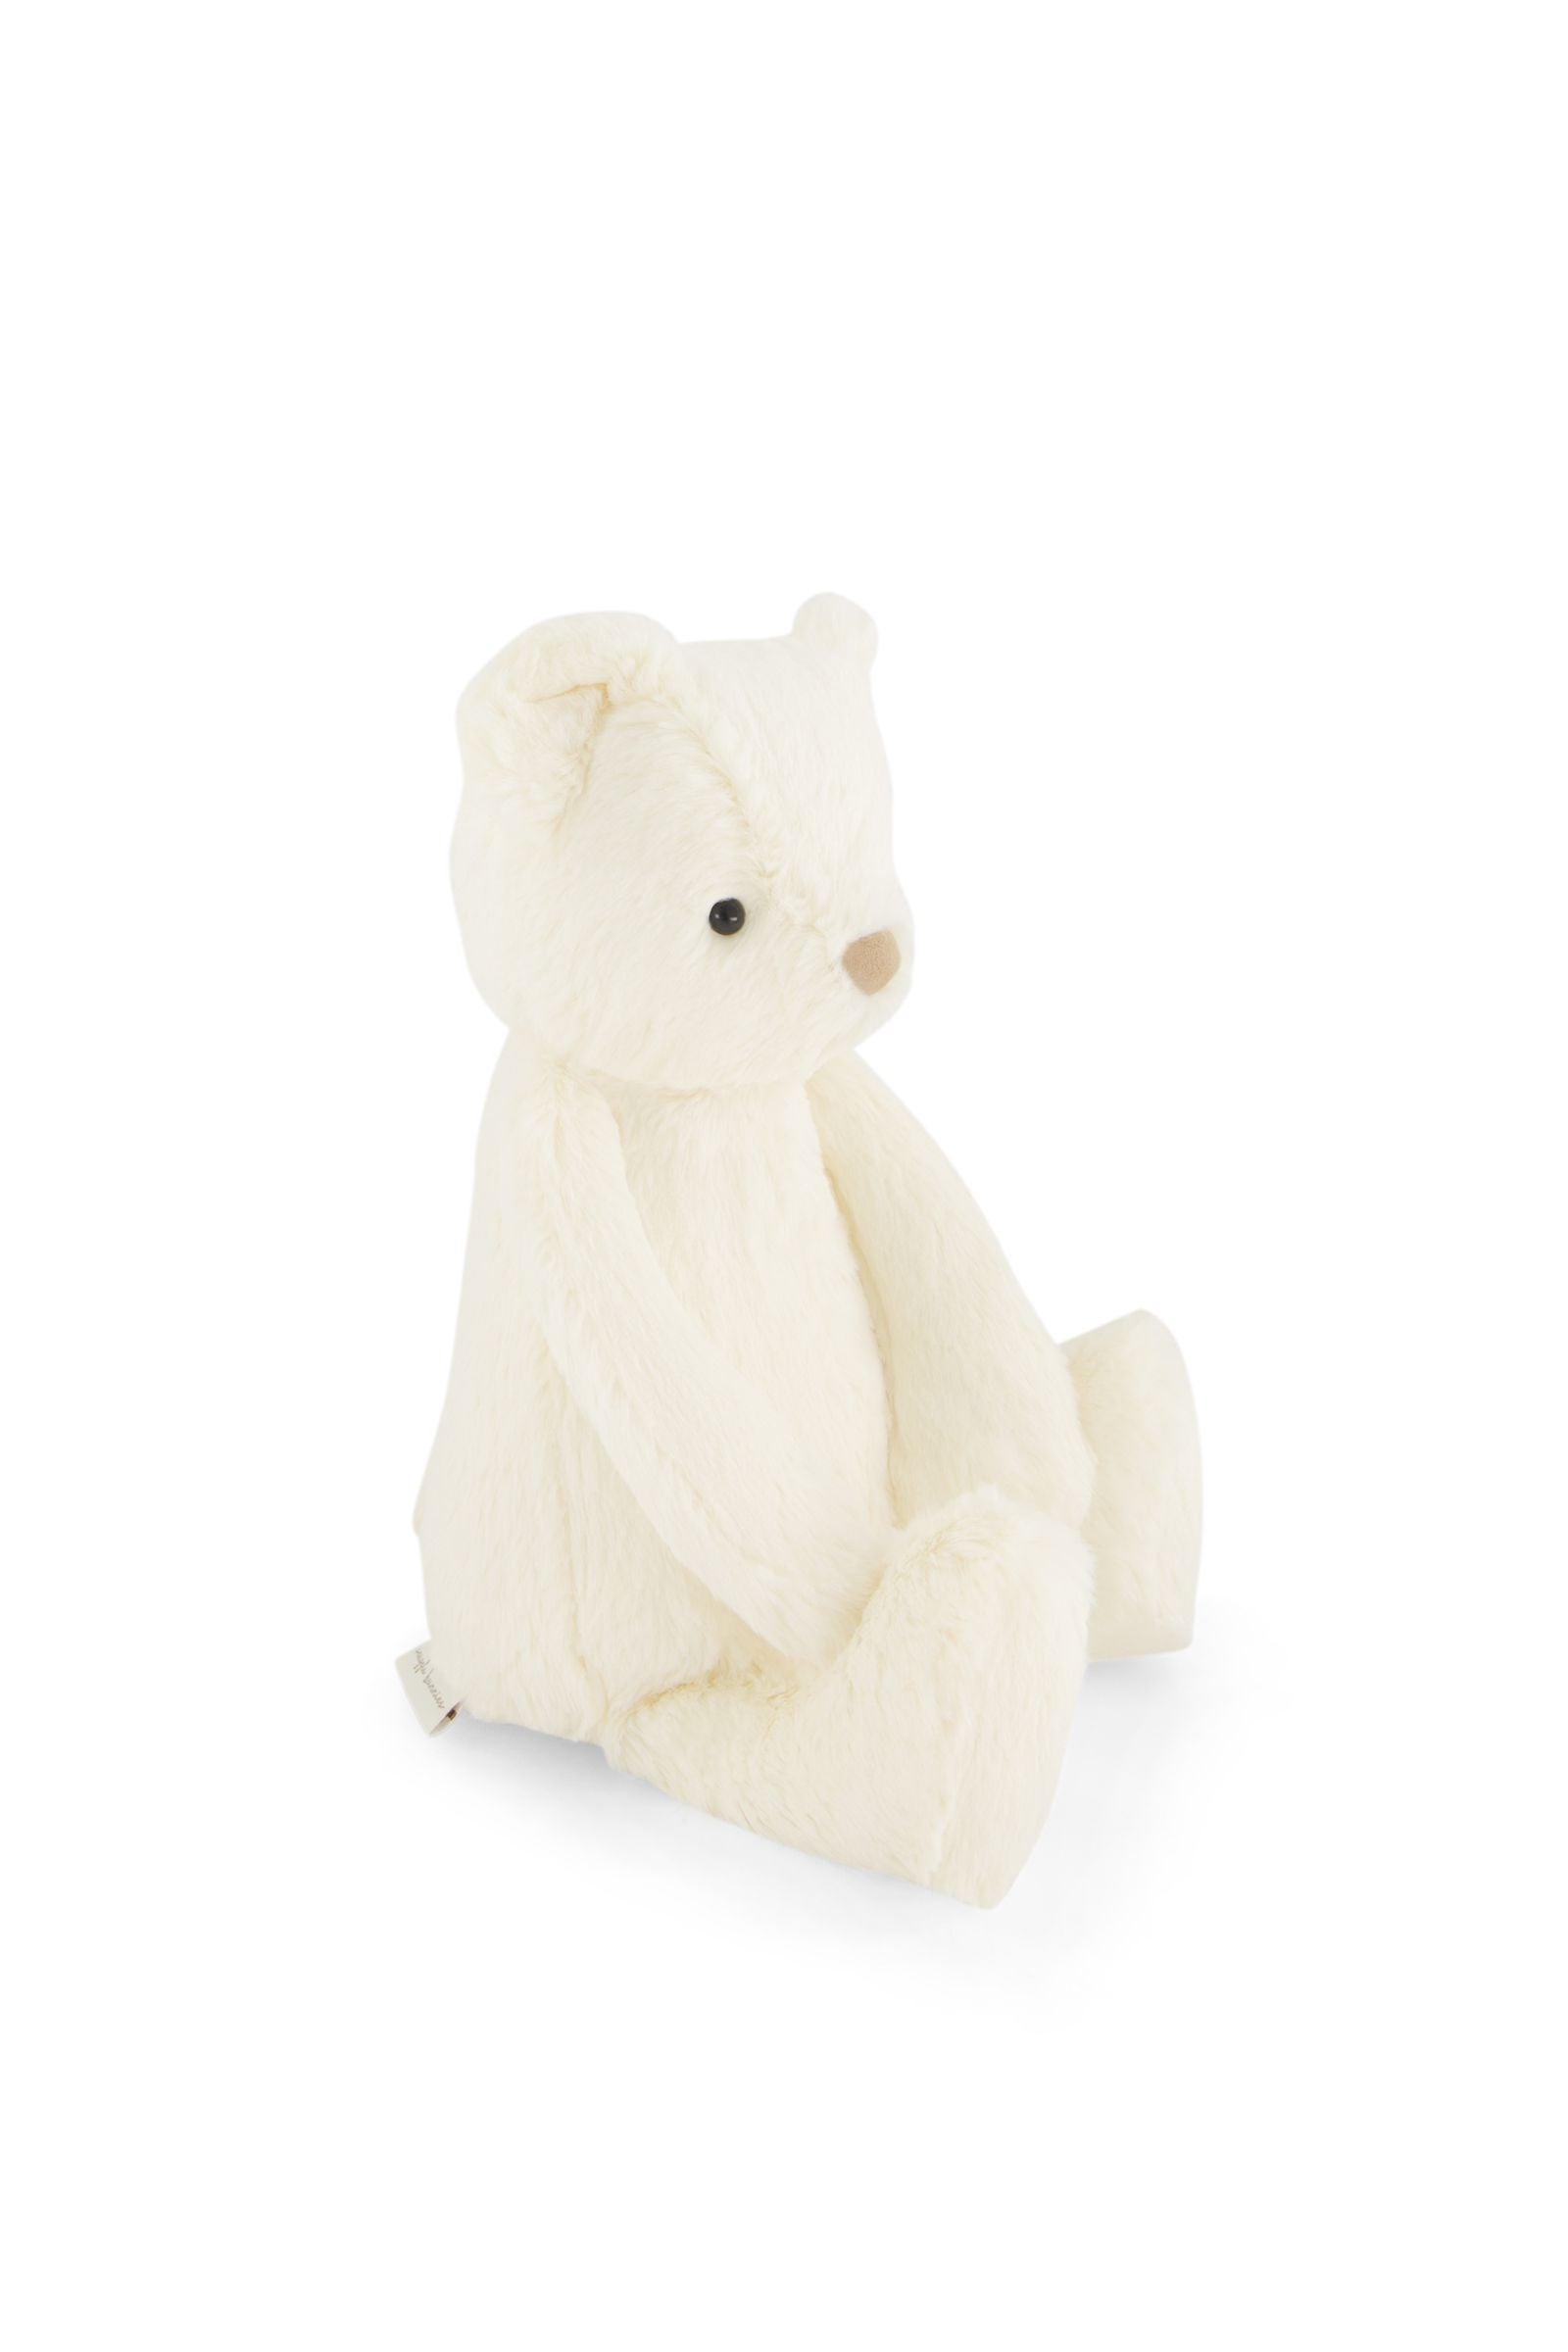 Snuggle Bunnies - George the Bear - Marshmallow 30cm-Toys-Jamie Kay-The Bay Room